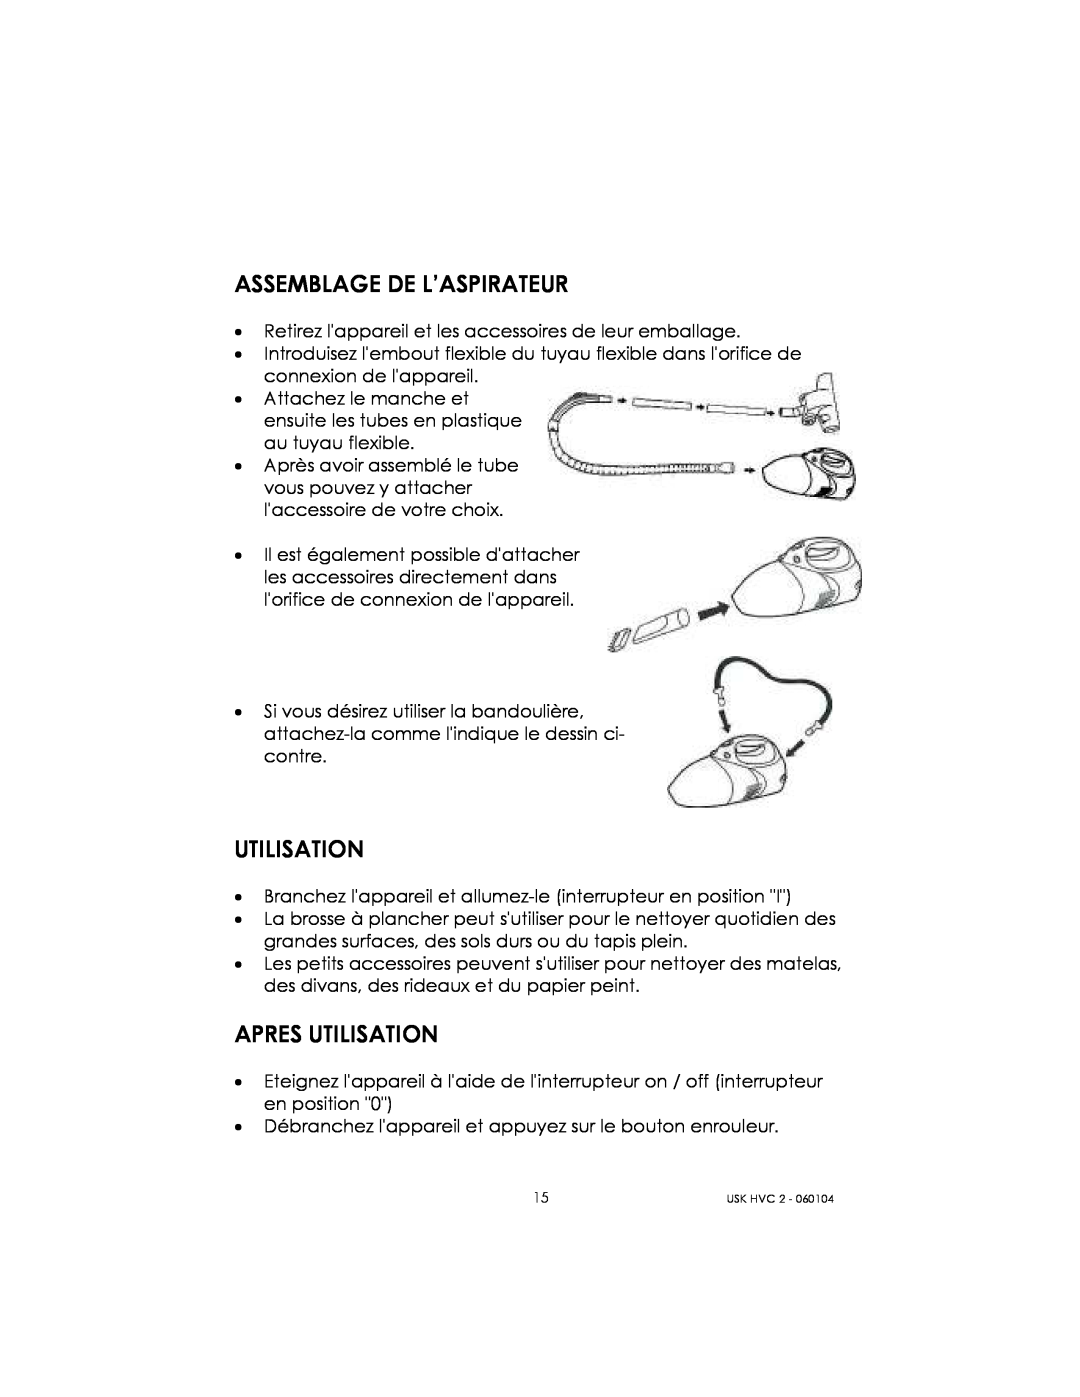 Kalorik USK HVC 2 manual Assemblage De L’Aspirateur, Apres Utilisation 